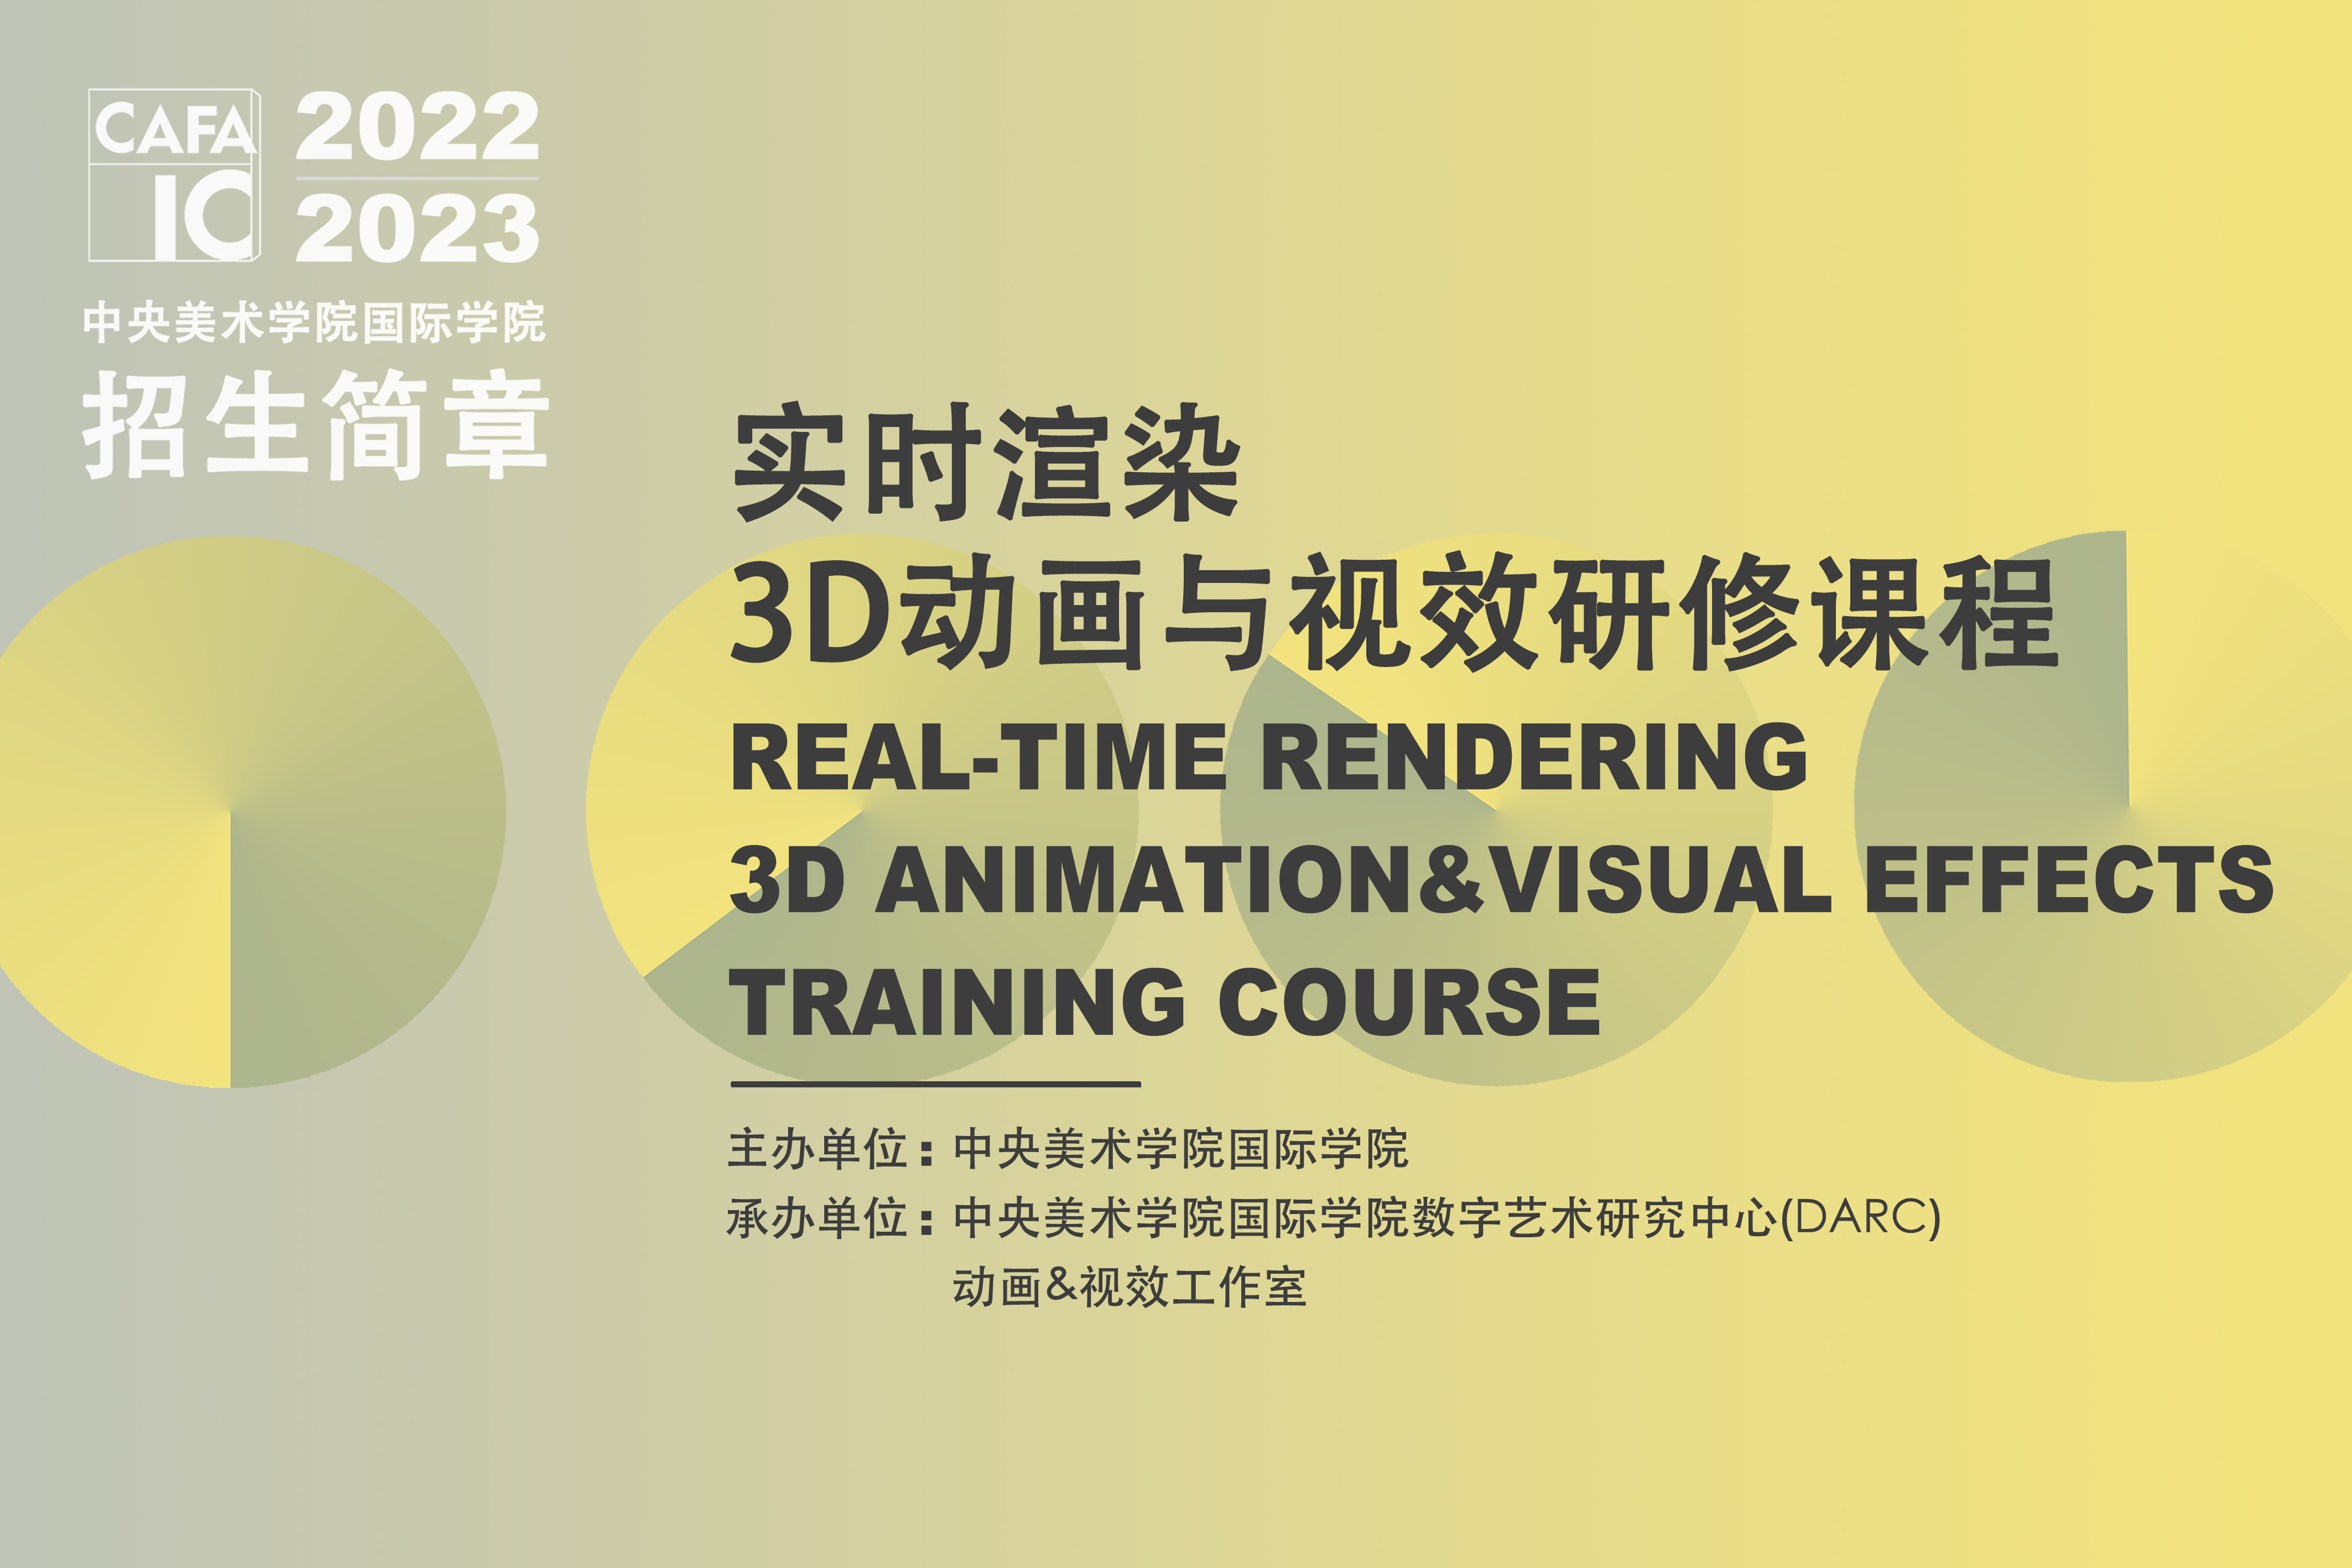 中央美术学院国际学院实时渲染3D动画&视效研修课程图片